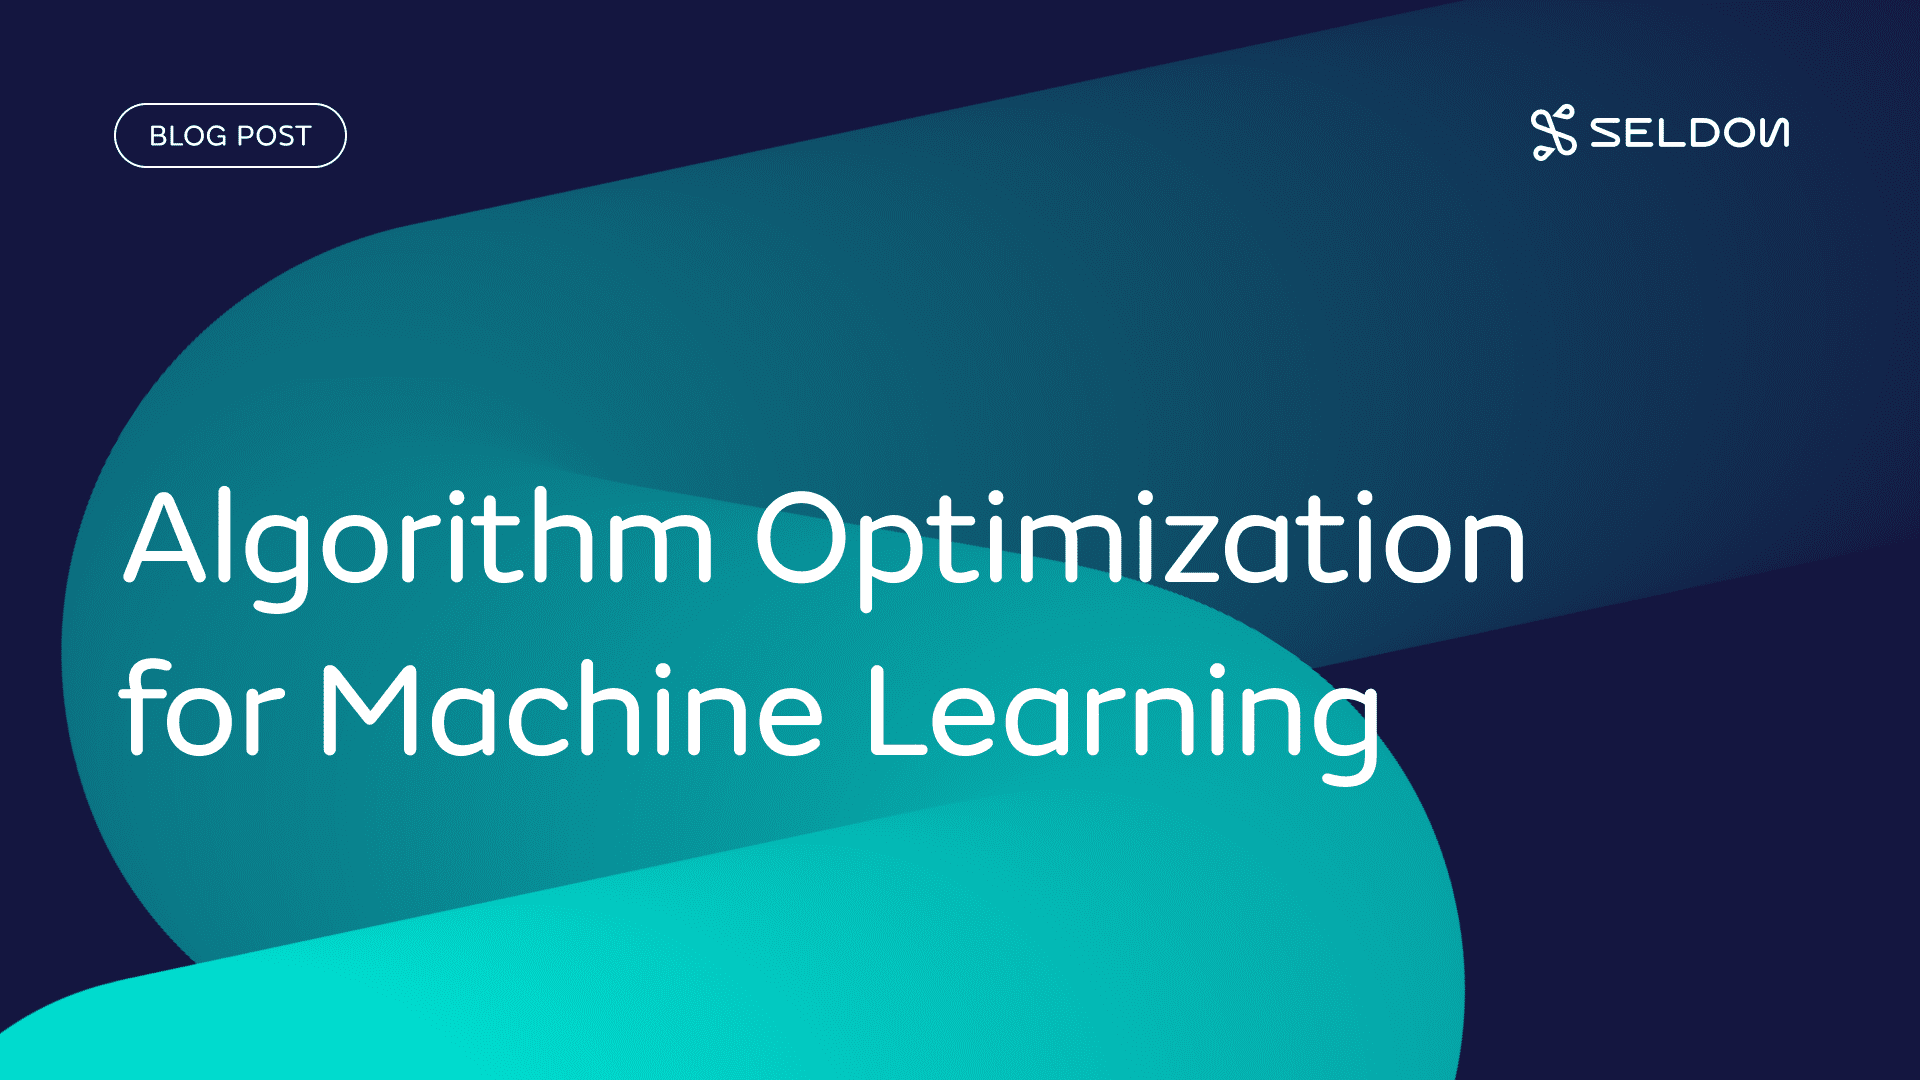 Algorithm Optimisation for Machine Learning